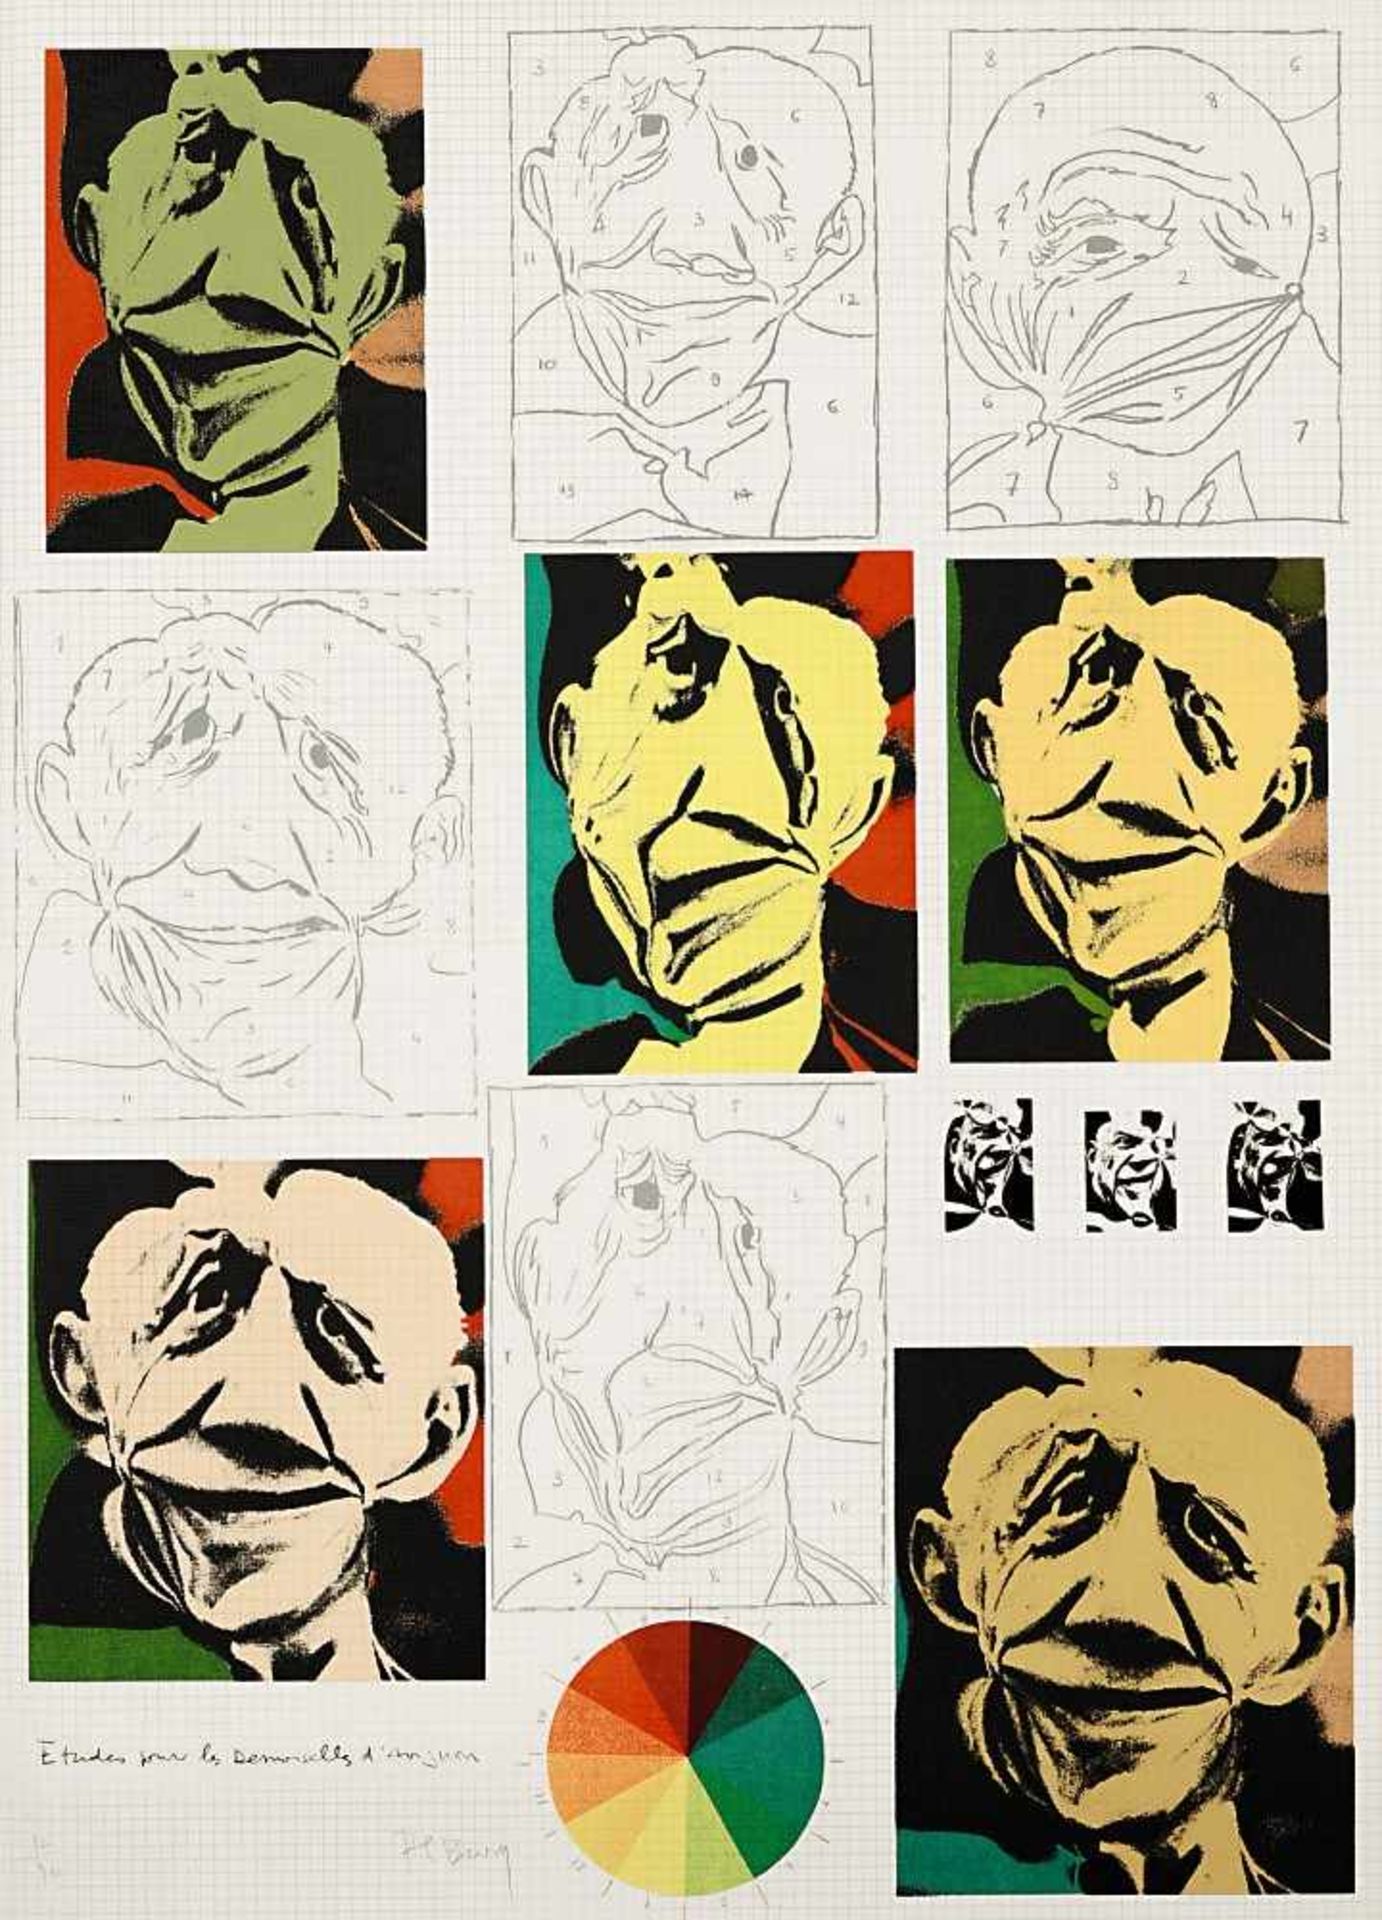 Zwei Blätter aus "Hommage à Picasso" Bury, Pol: "o.T." / Paolozzi, Eduardo: "etudes pour les